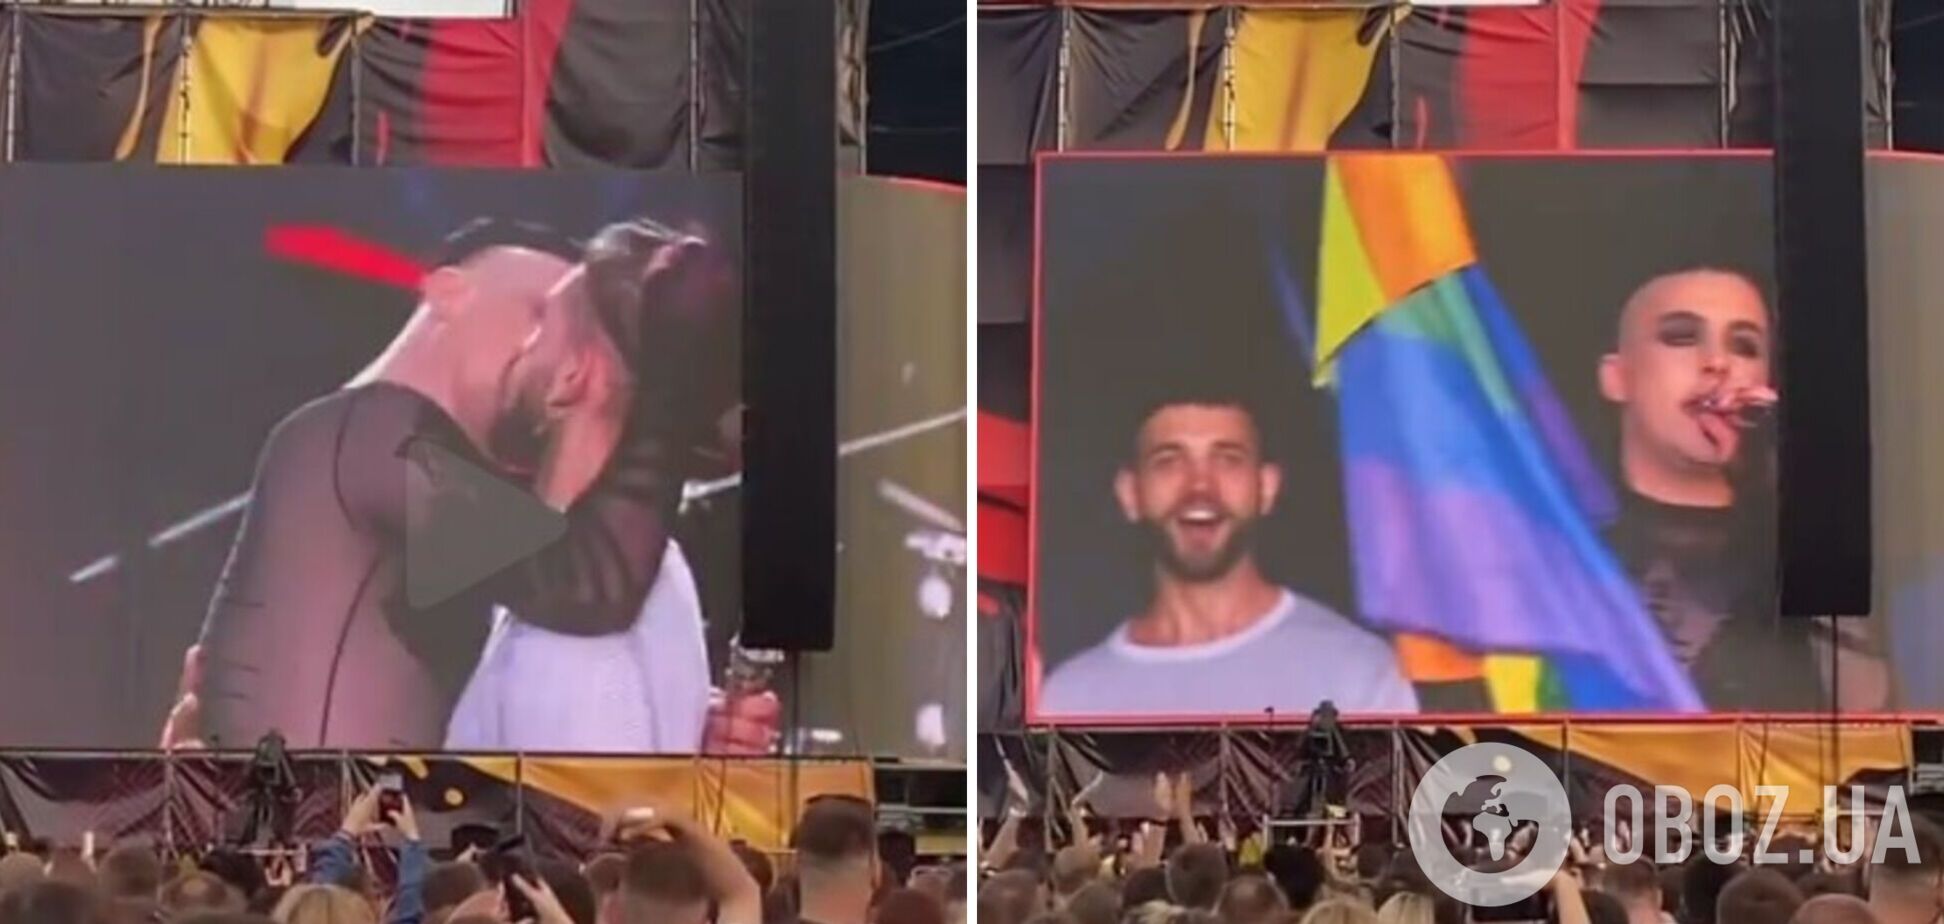 MELOVIN на Atlas Weekend розгорнув прапор ЛГБТ і поцілував чоловіка. Відео 18+, яке вирізали з ефіру